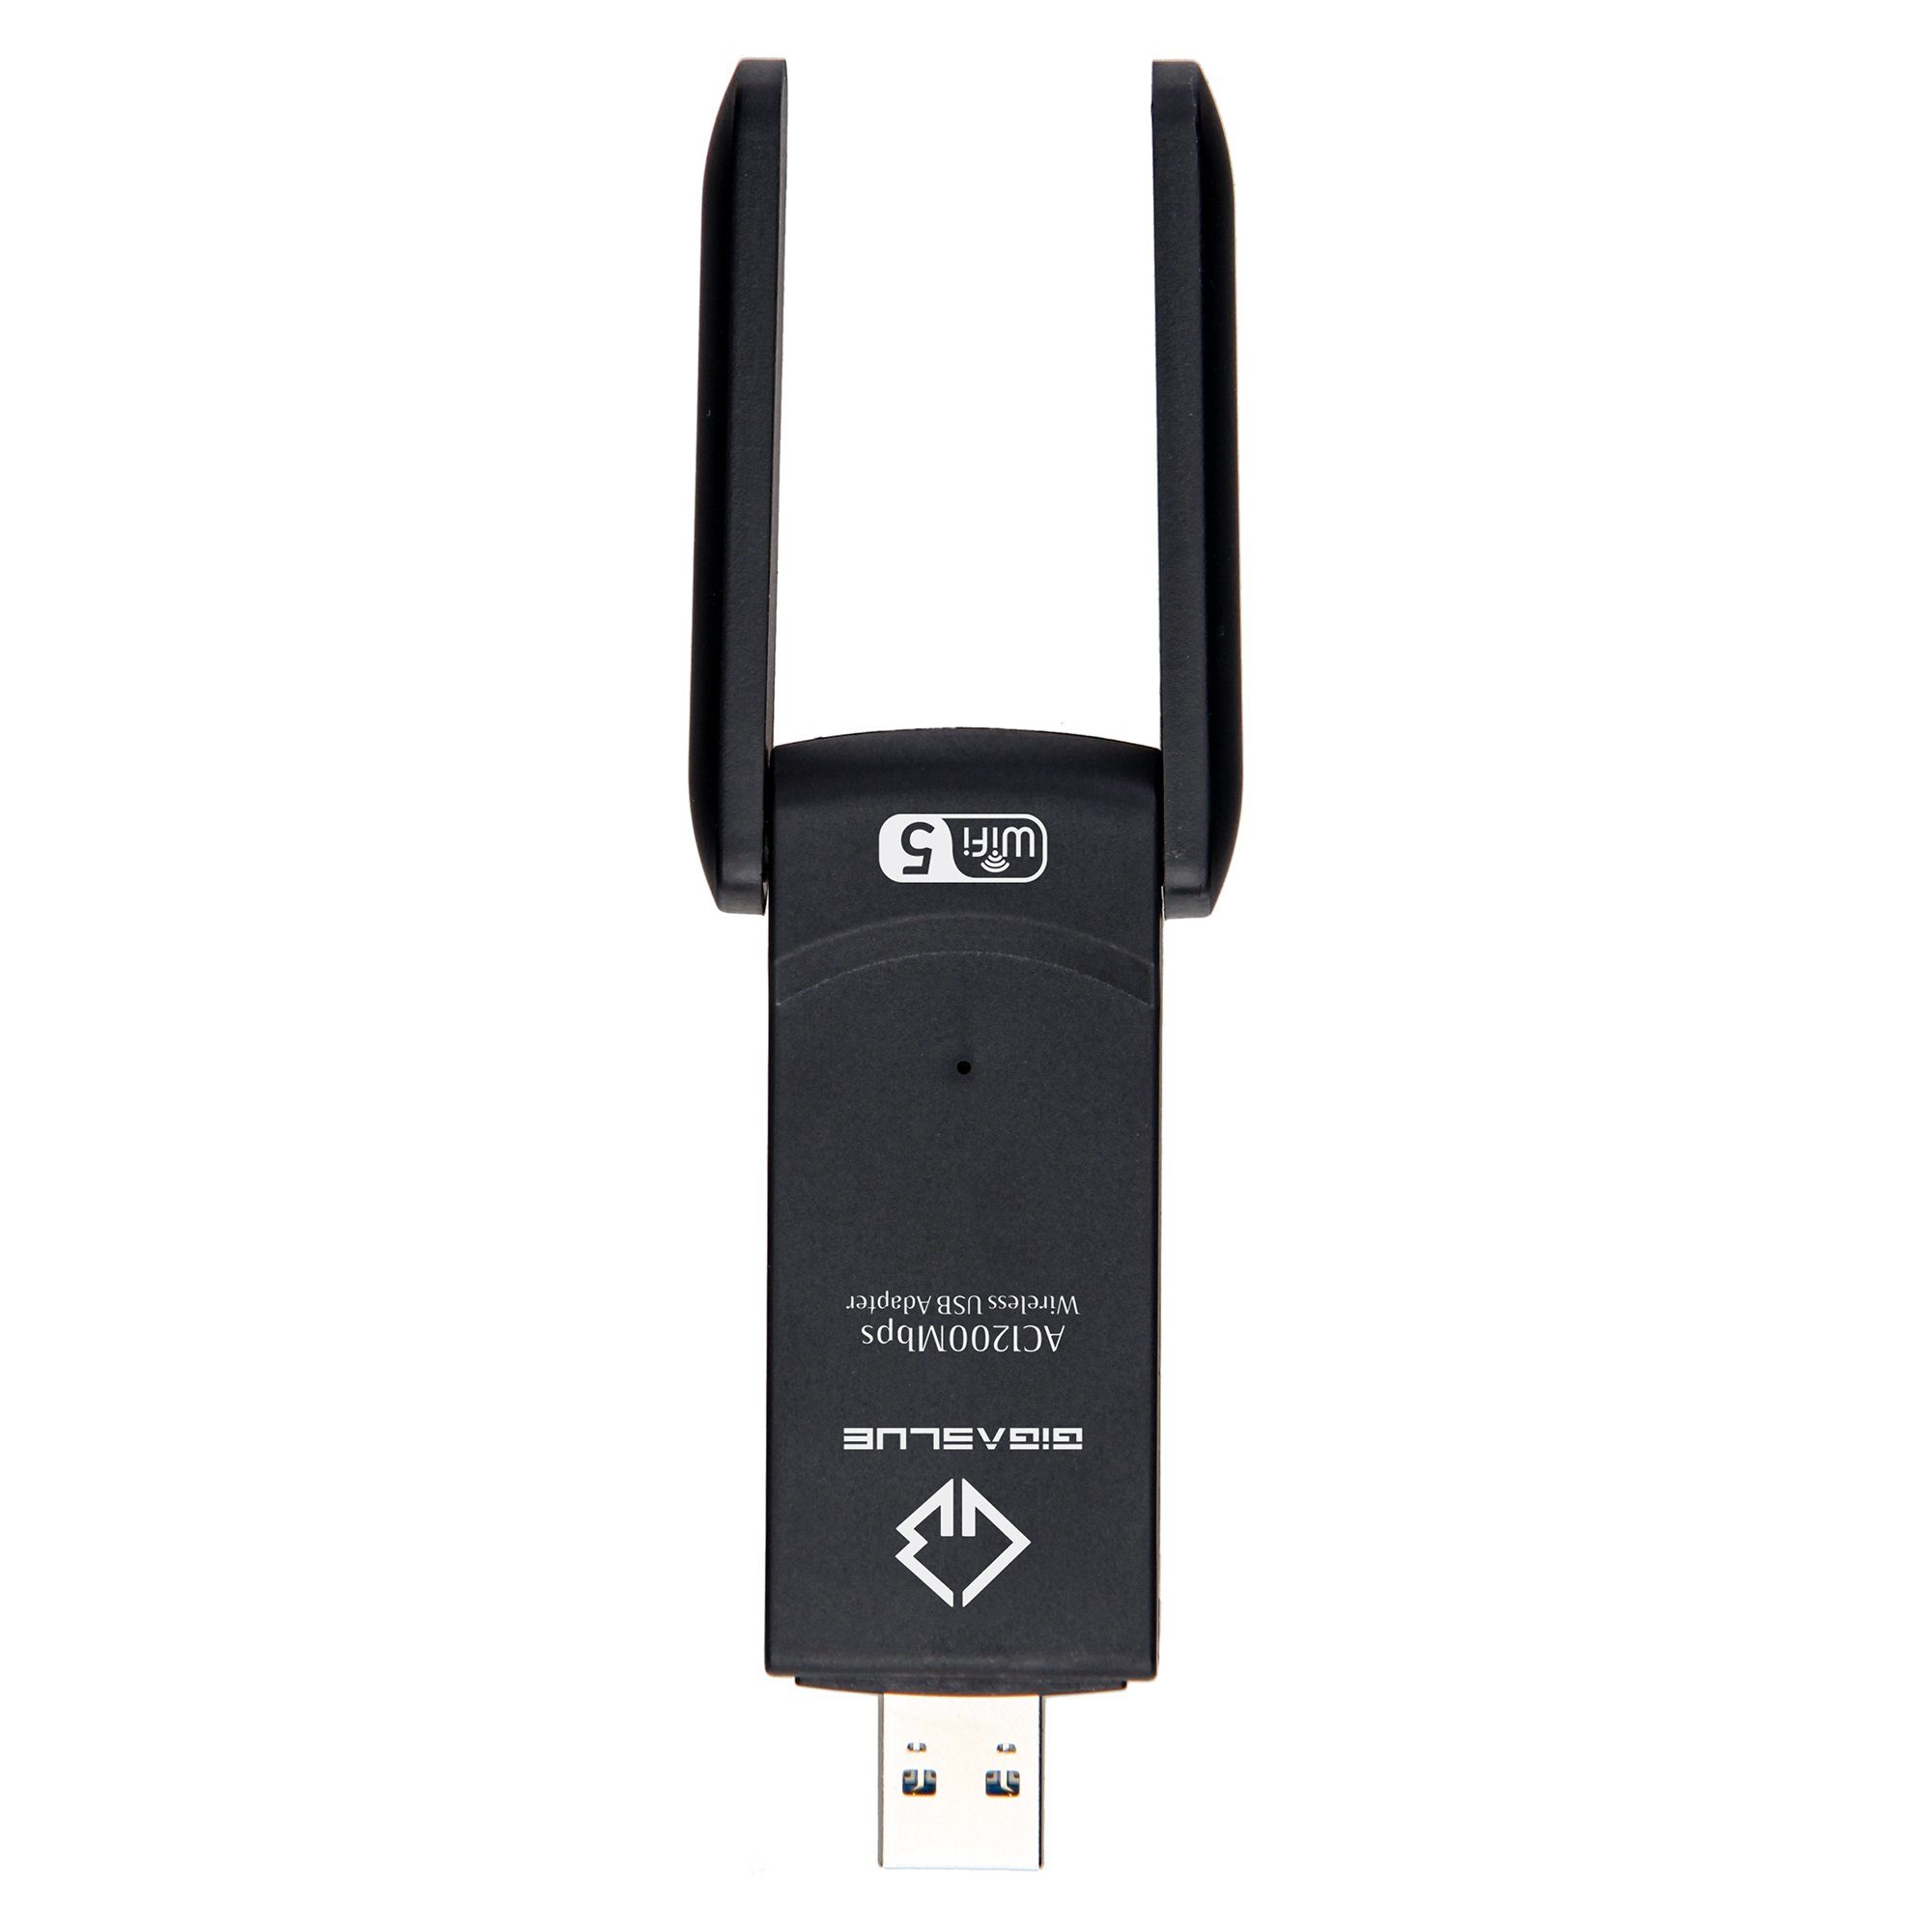 GigaBlue adapter 1200Mbps Kabel-Receiver USB Gigablue WiFi 3.0